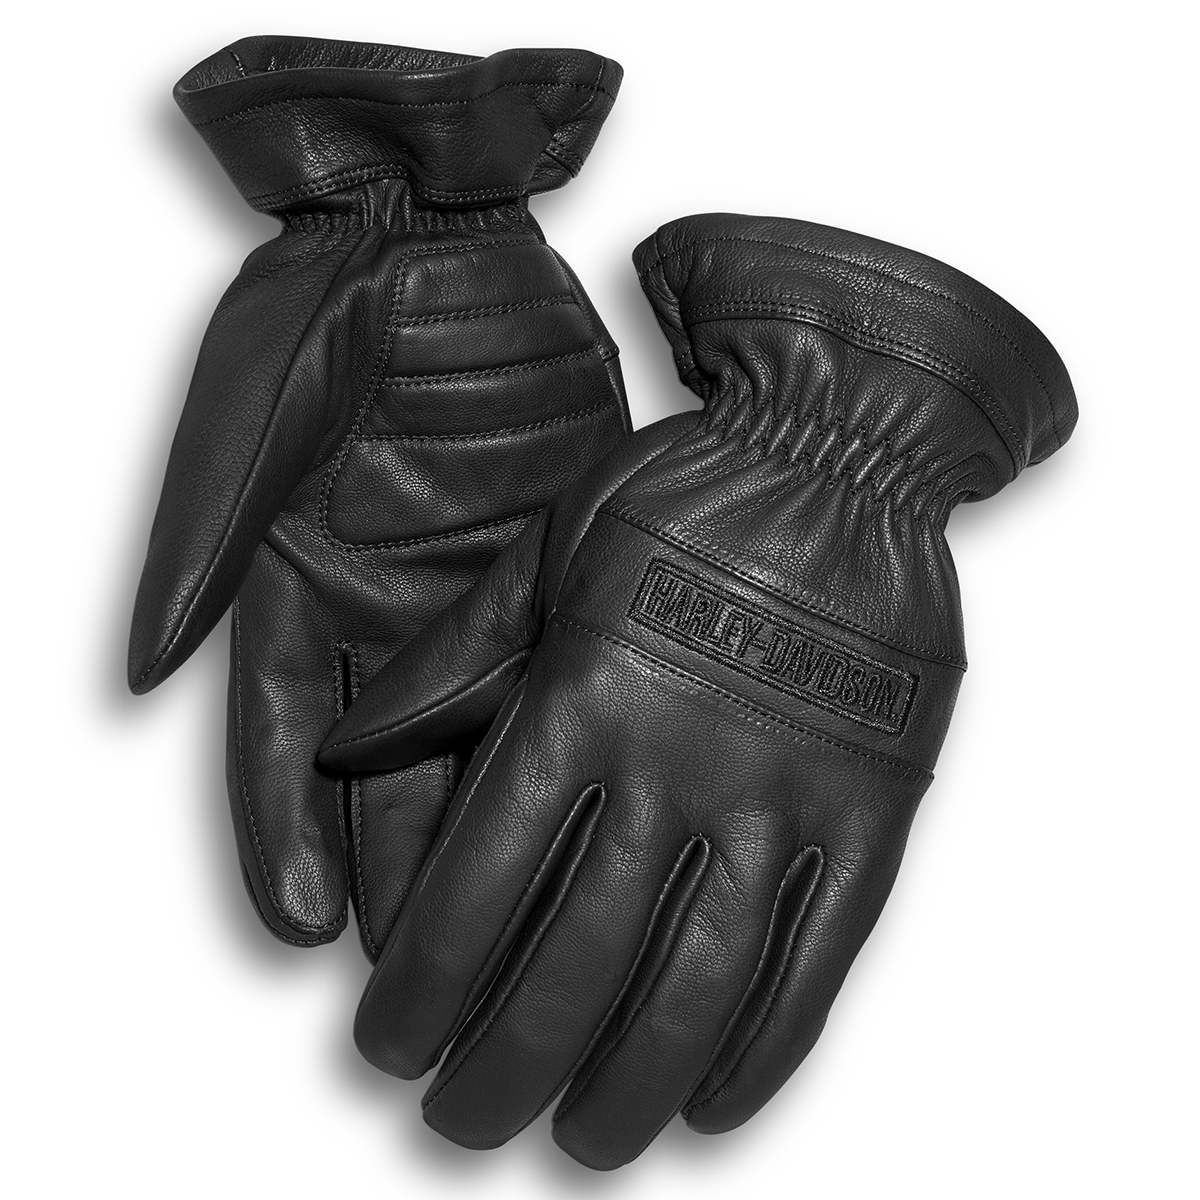 Harley-Davidson Commute Men's Leather Gloves